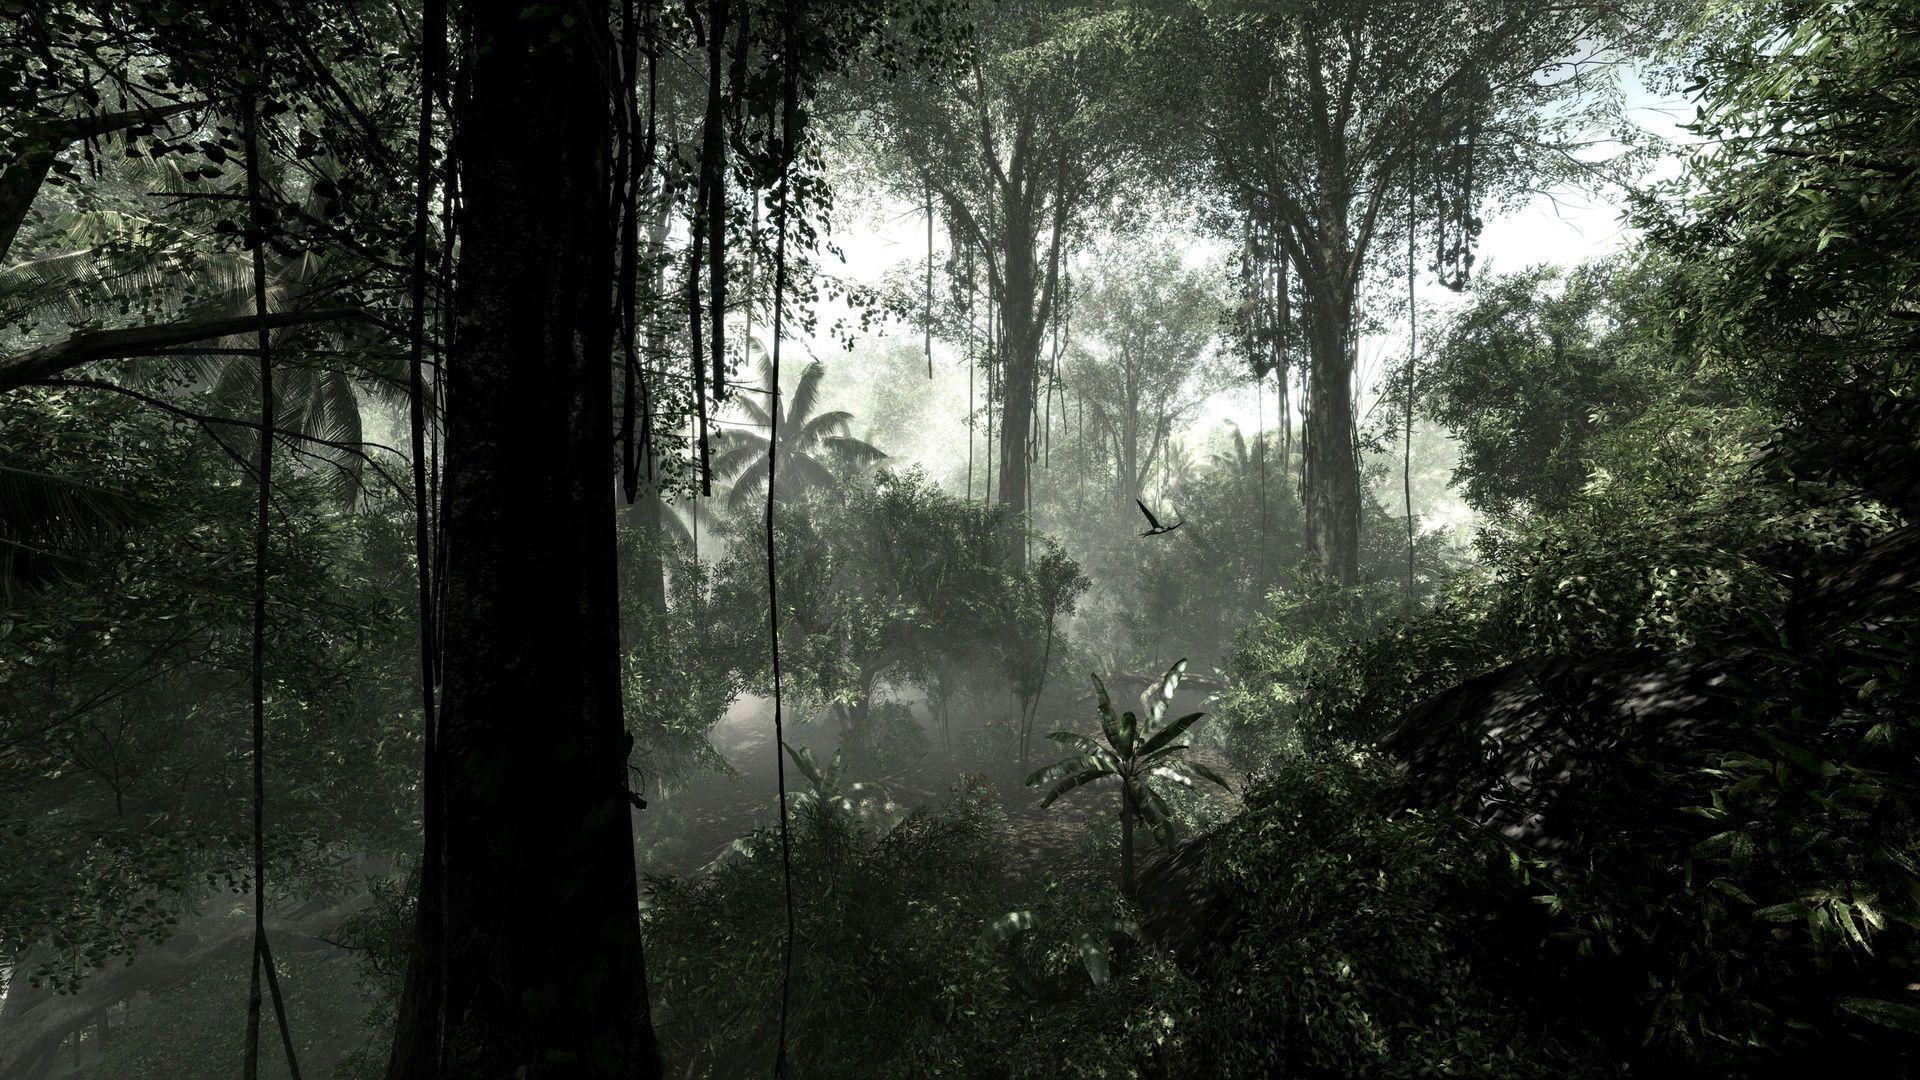 Rainforest HD Wallpaper